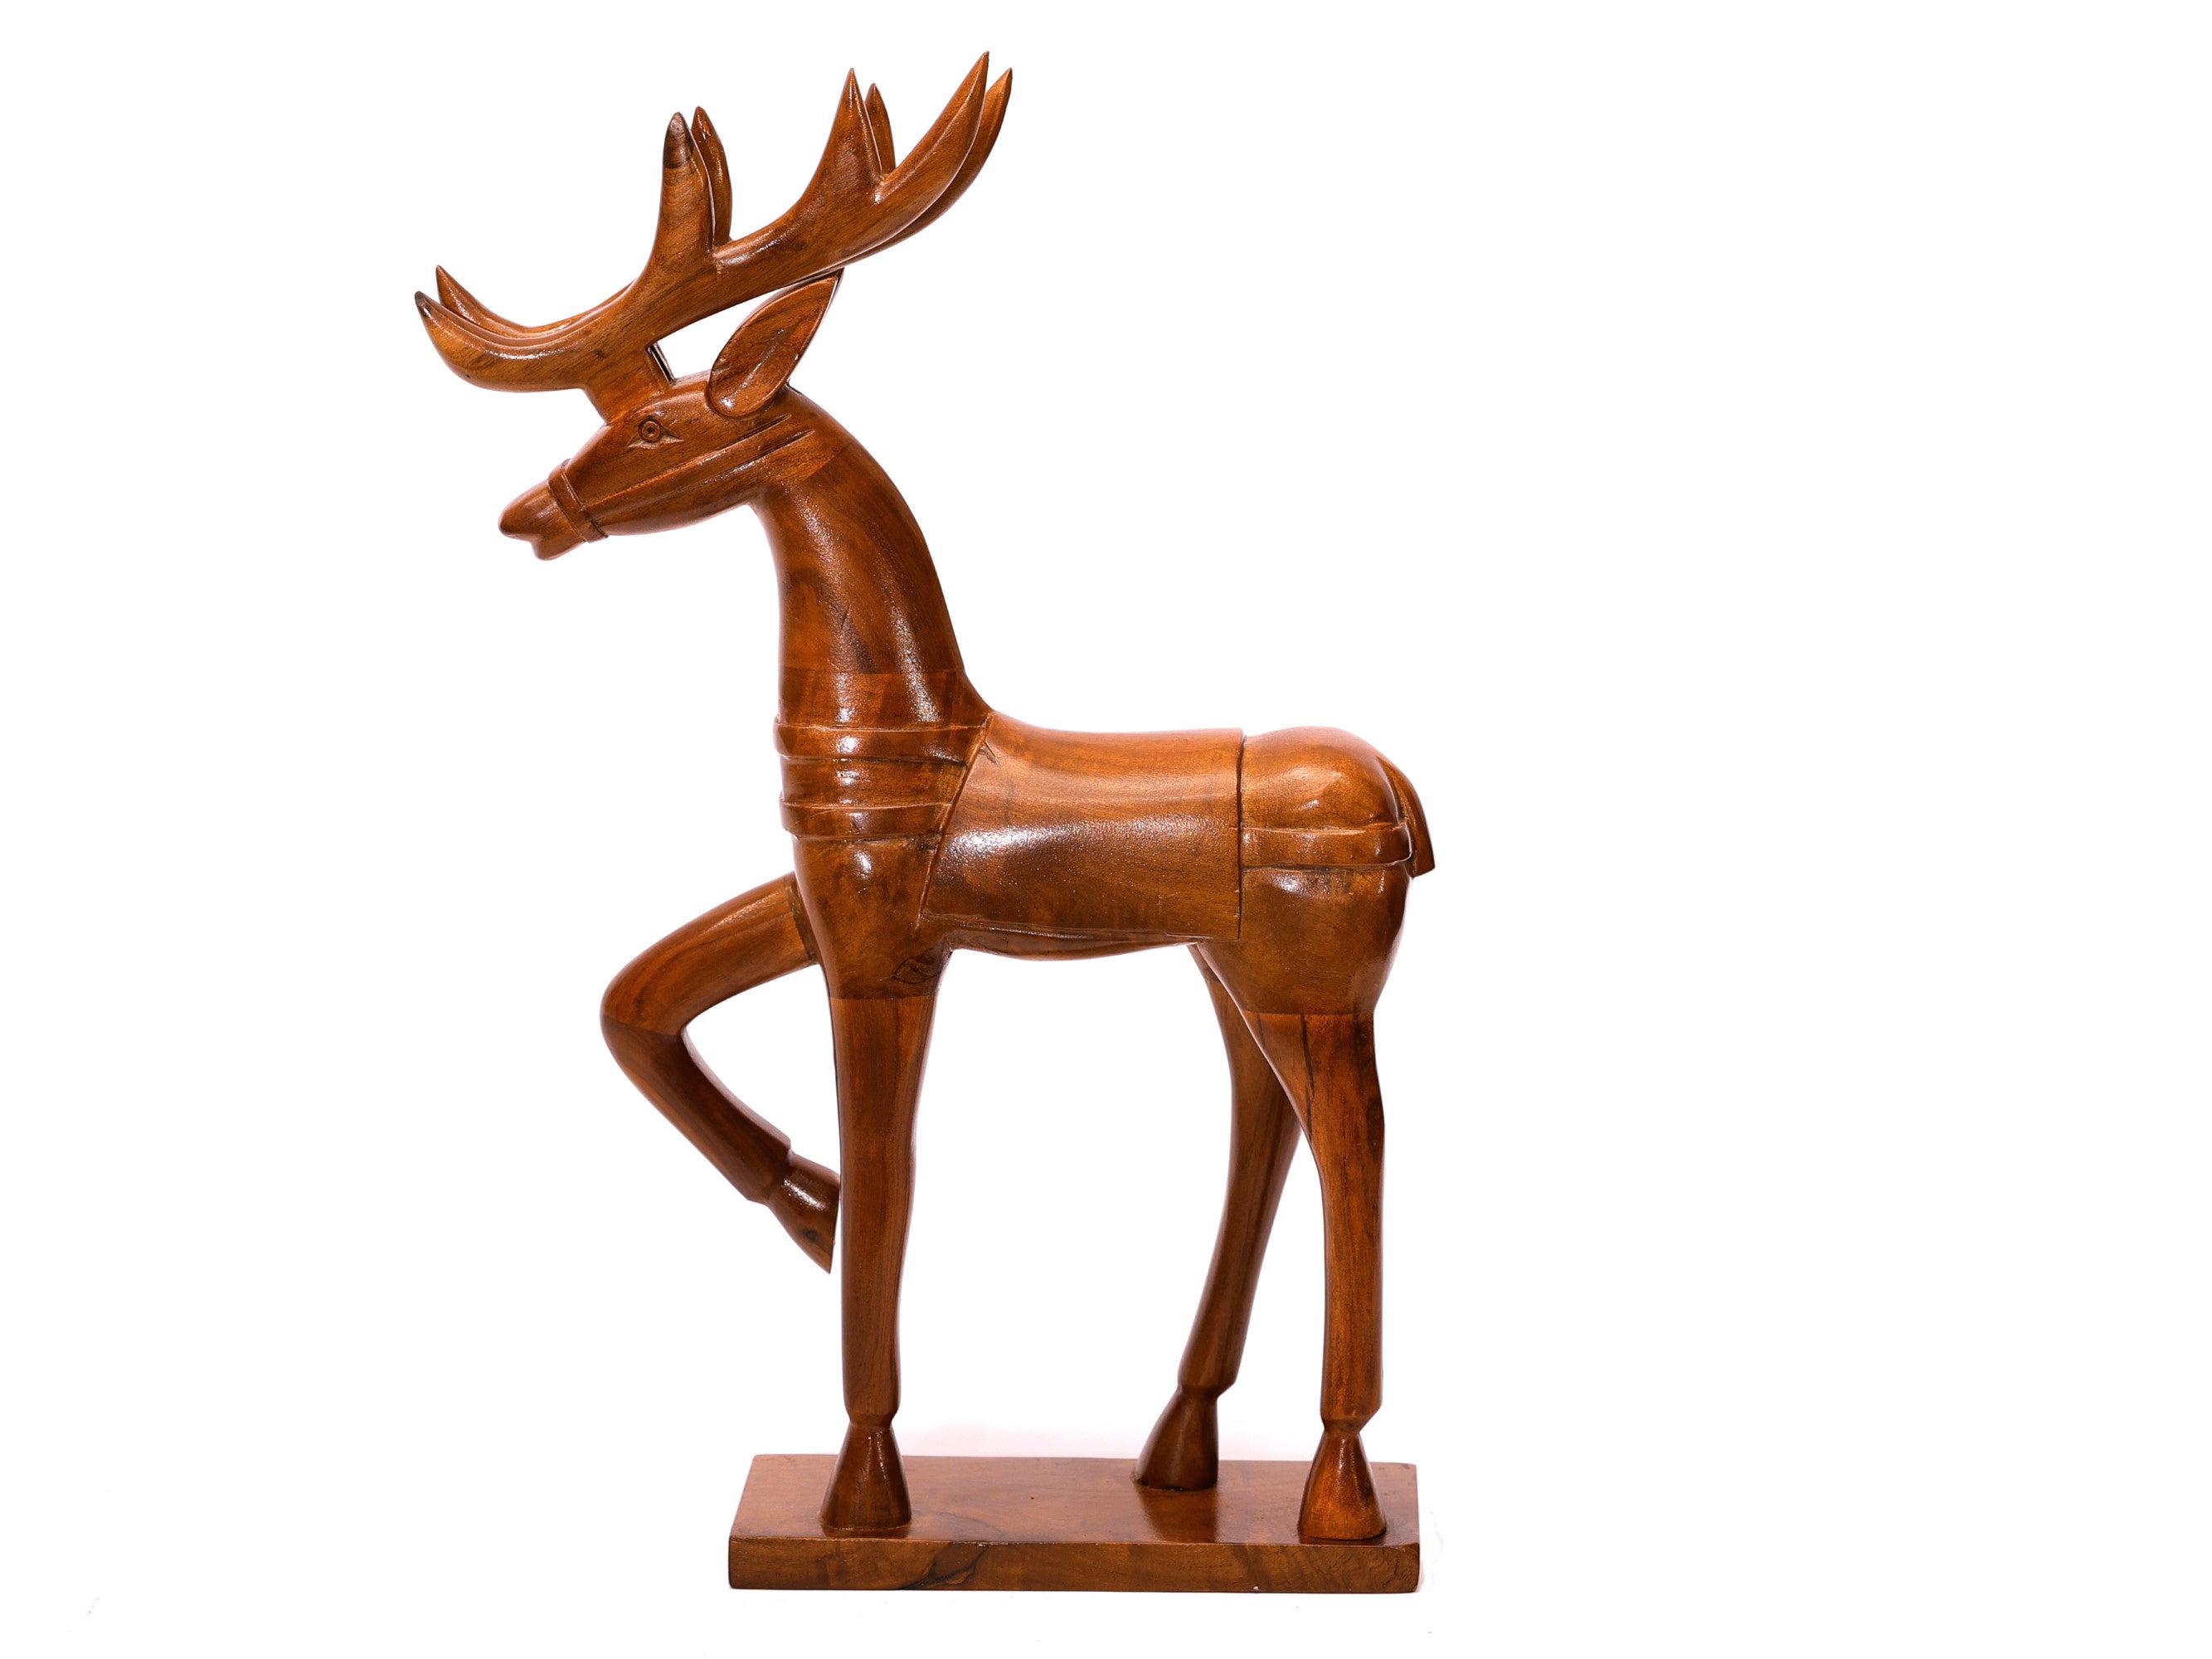 Wooden Dancing Deer Curio Animal Figurine